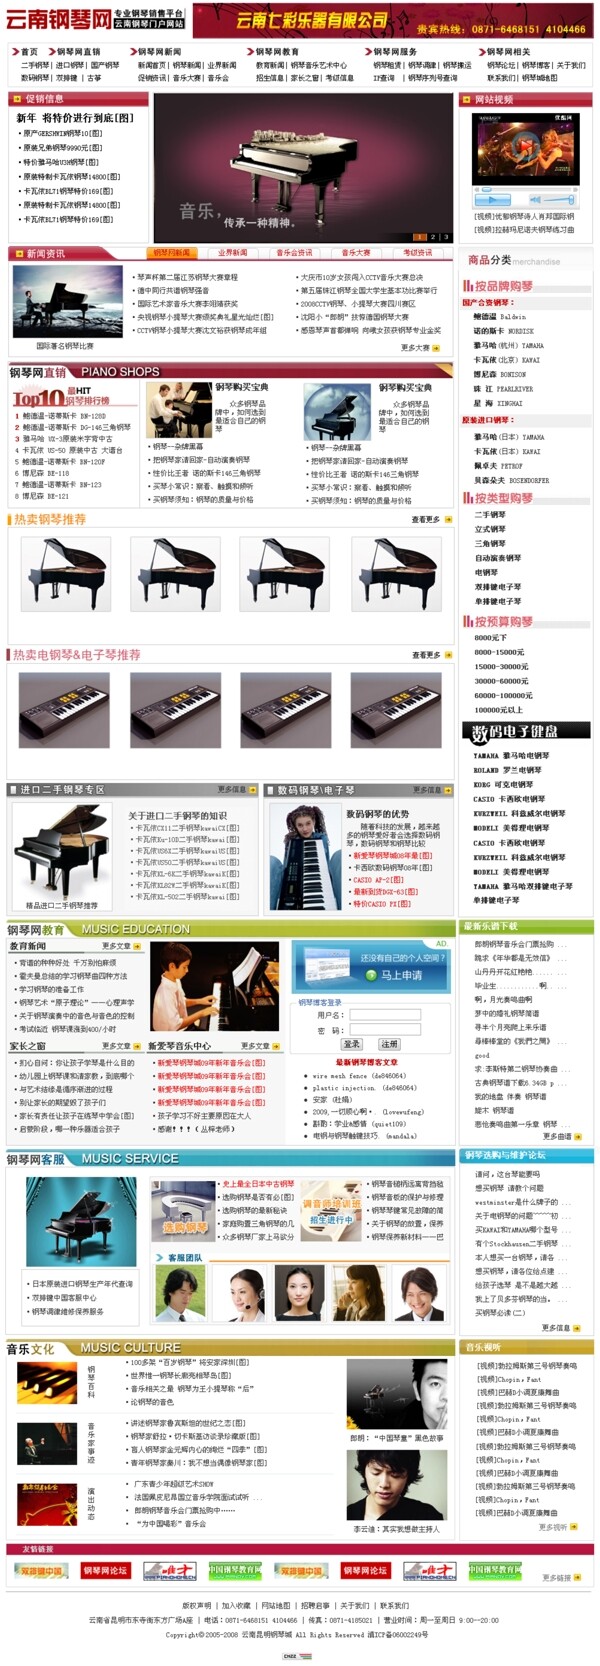 钢琴门户网站首页模板图片